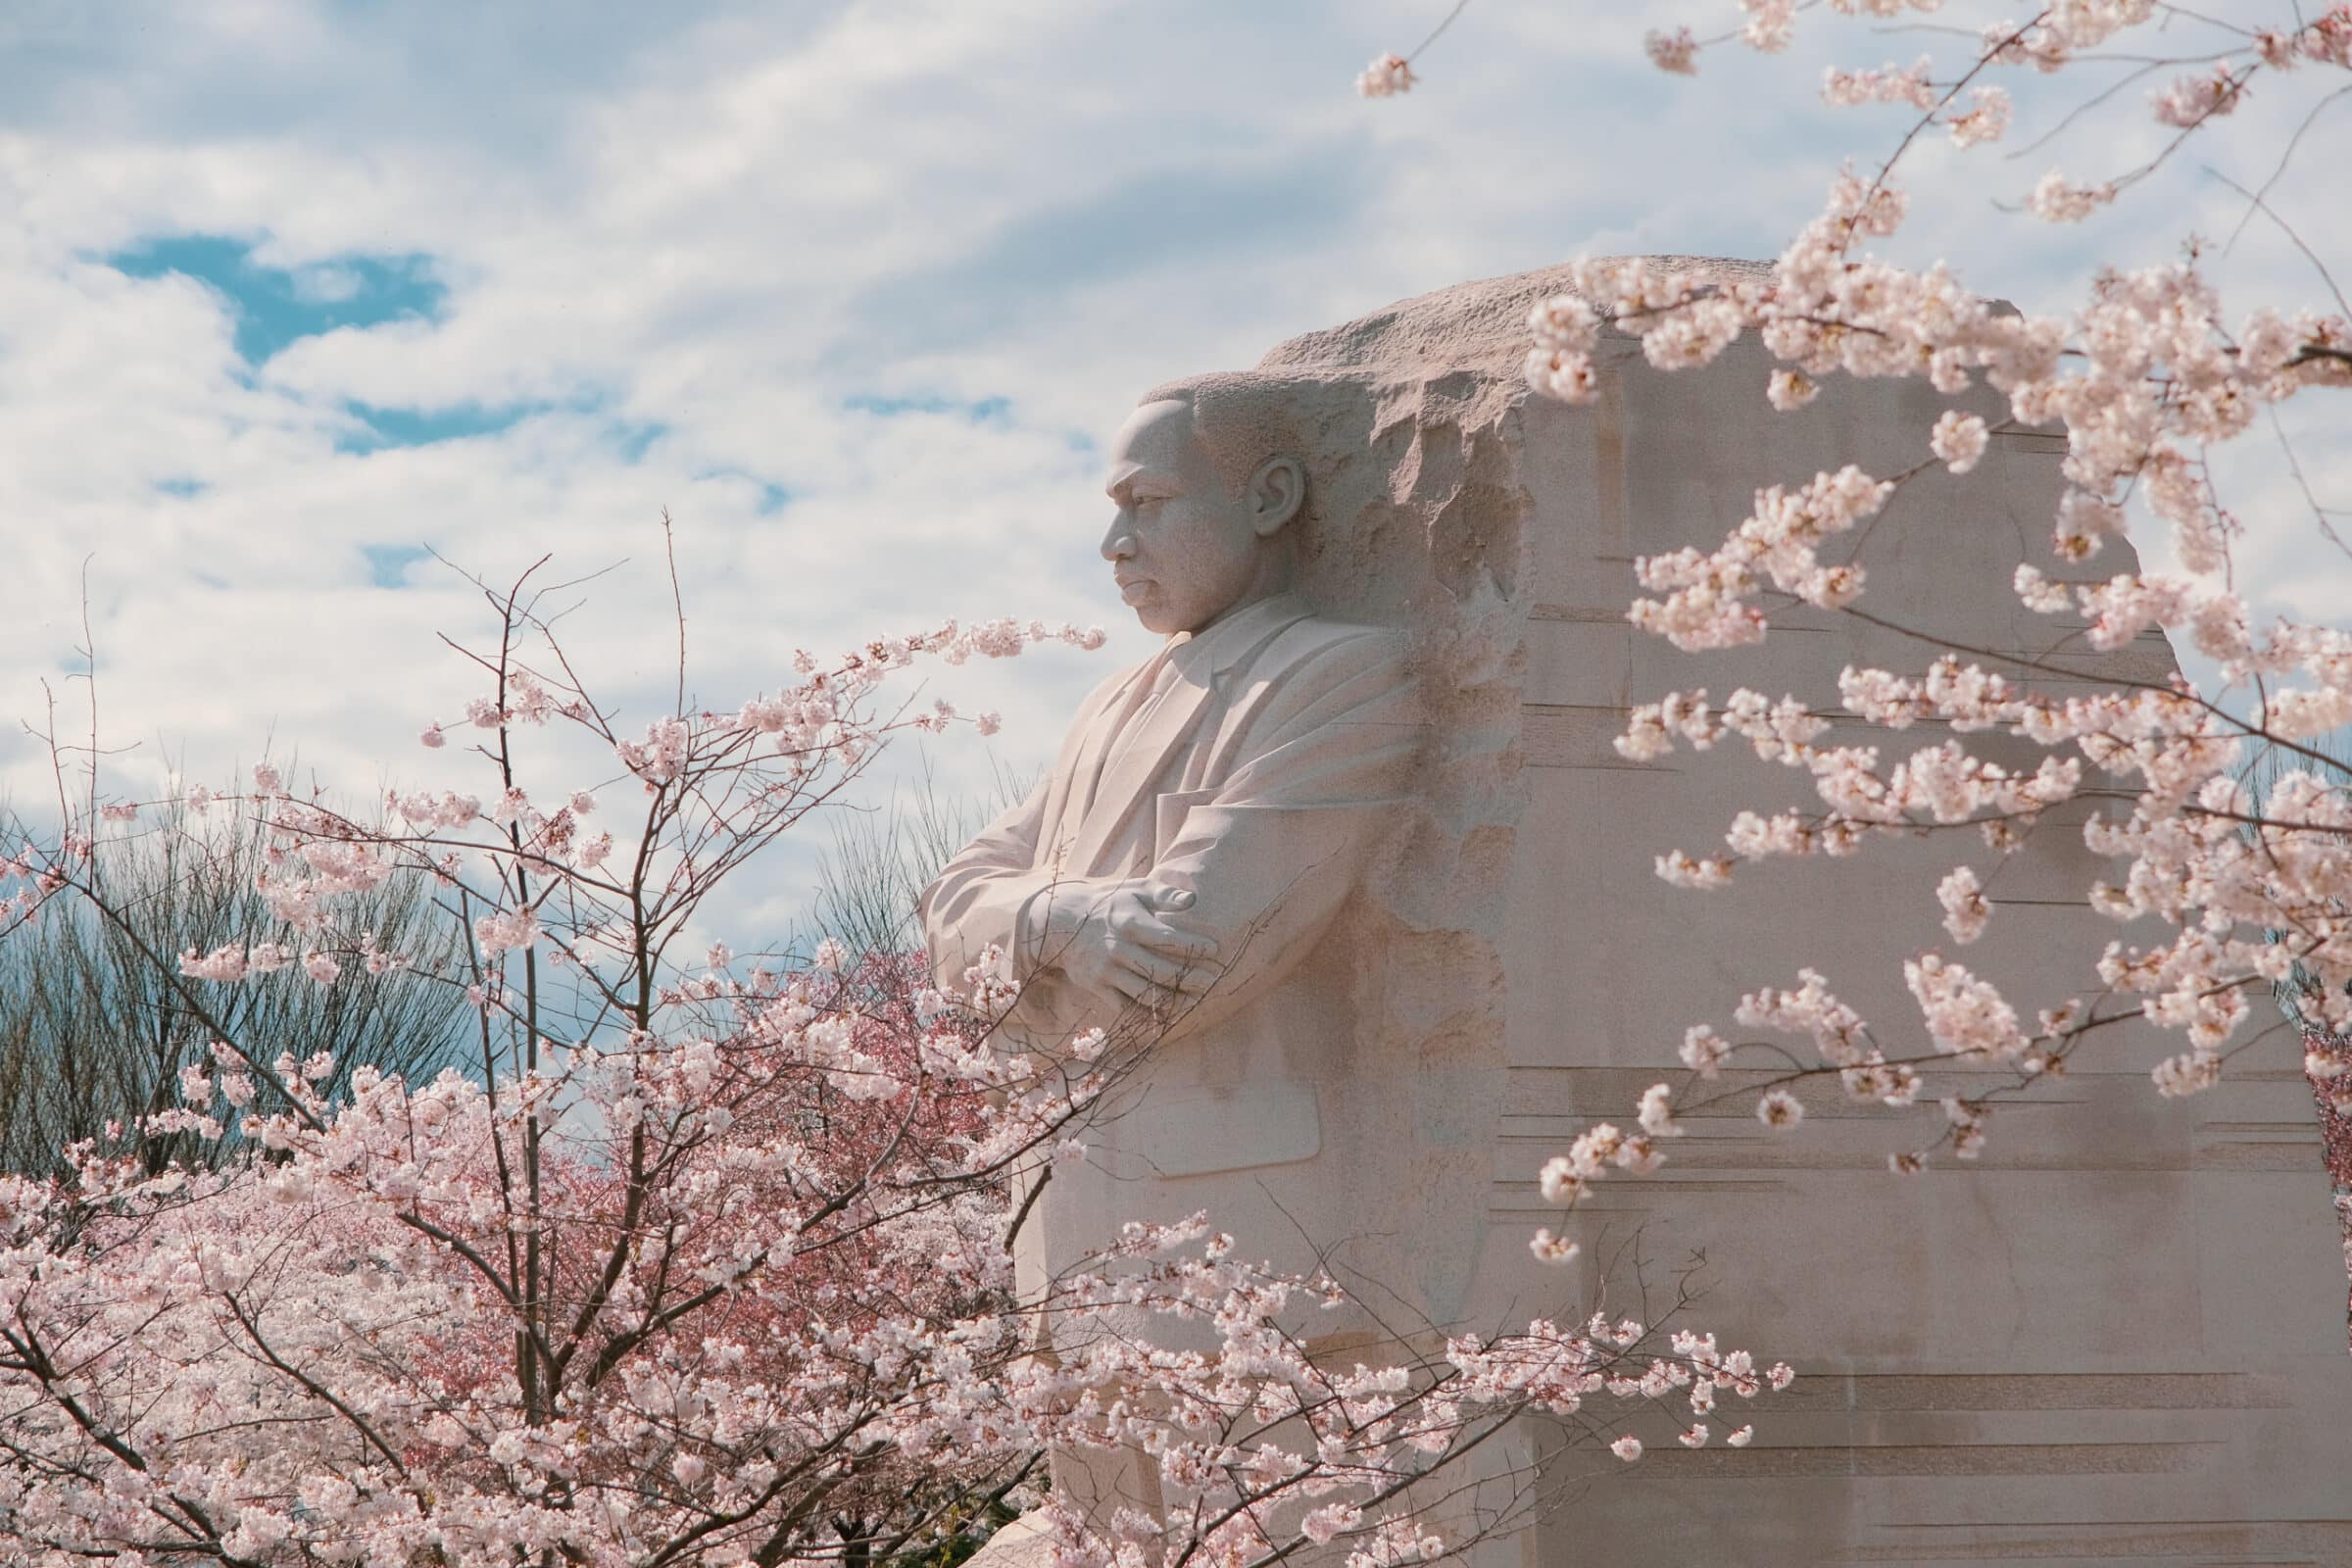 Martin Luther King Memorial Statue, Washington D.C., 2022 | Gemaakt met de Fuji X-T4